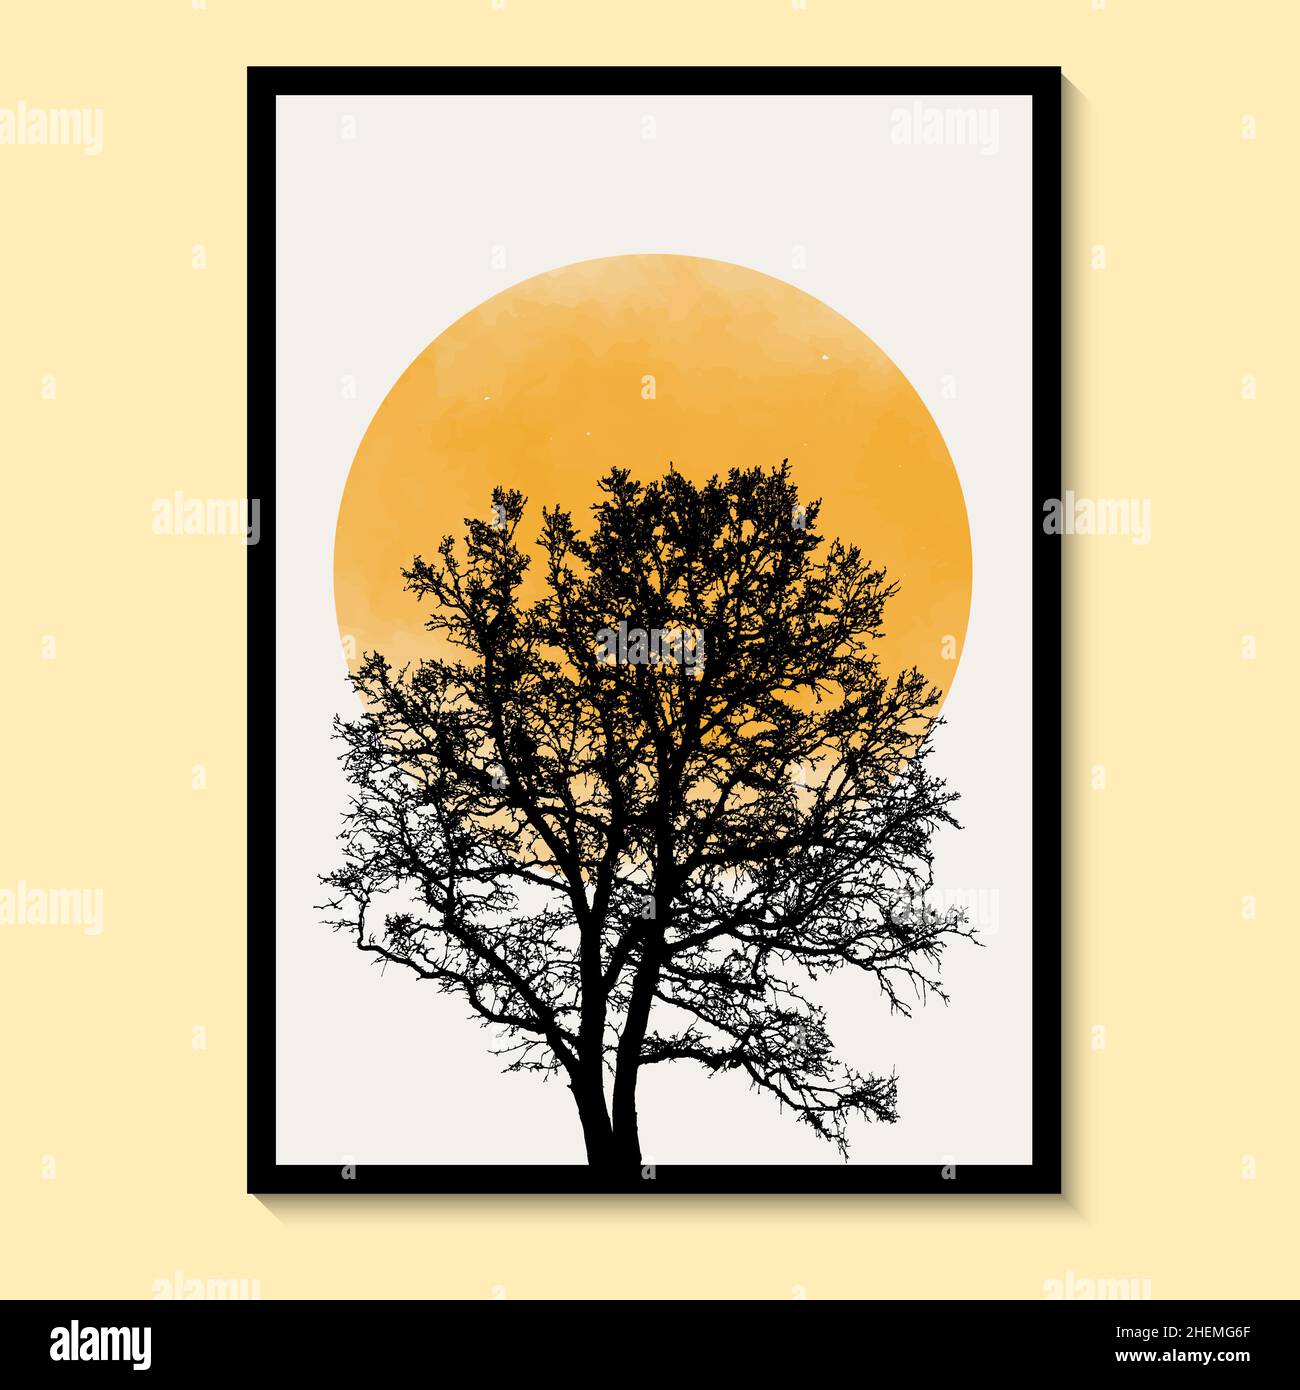 Astratto Tree, Sun Yellow Art Watercolor Wall Painting Posters e stampe Nordic Murals Vector art print. Illustrazione Vettoriale